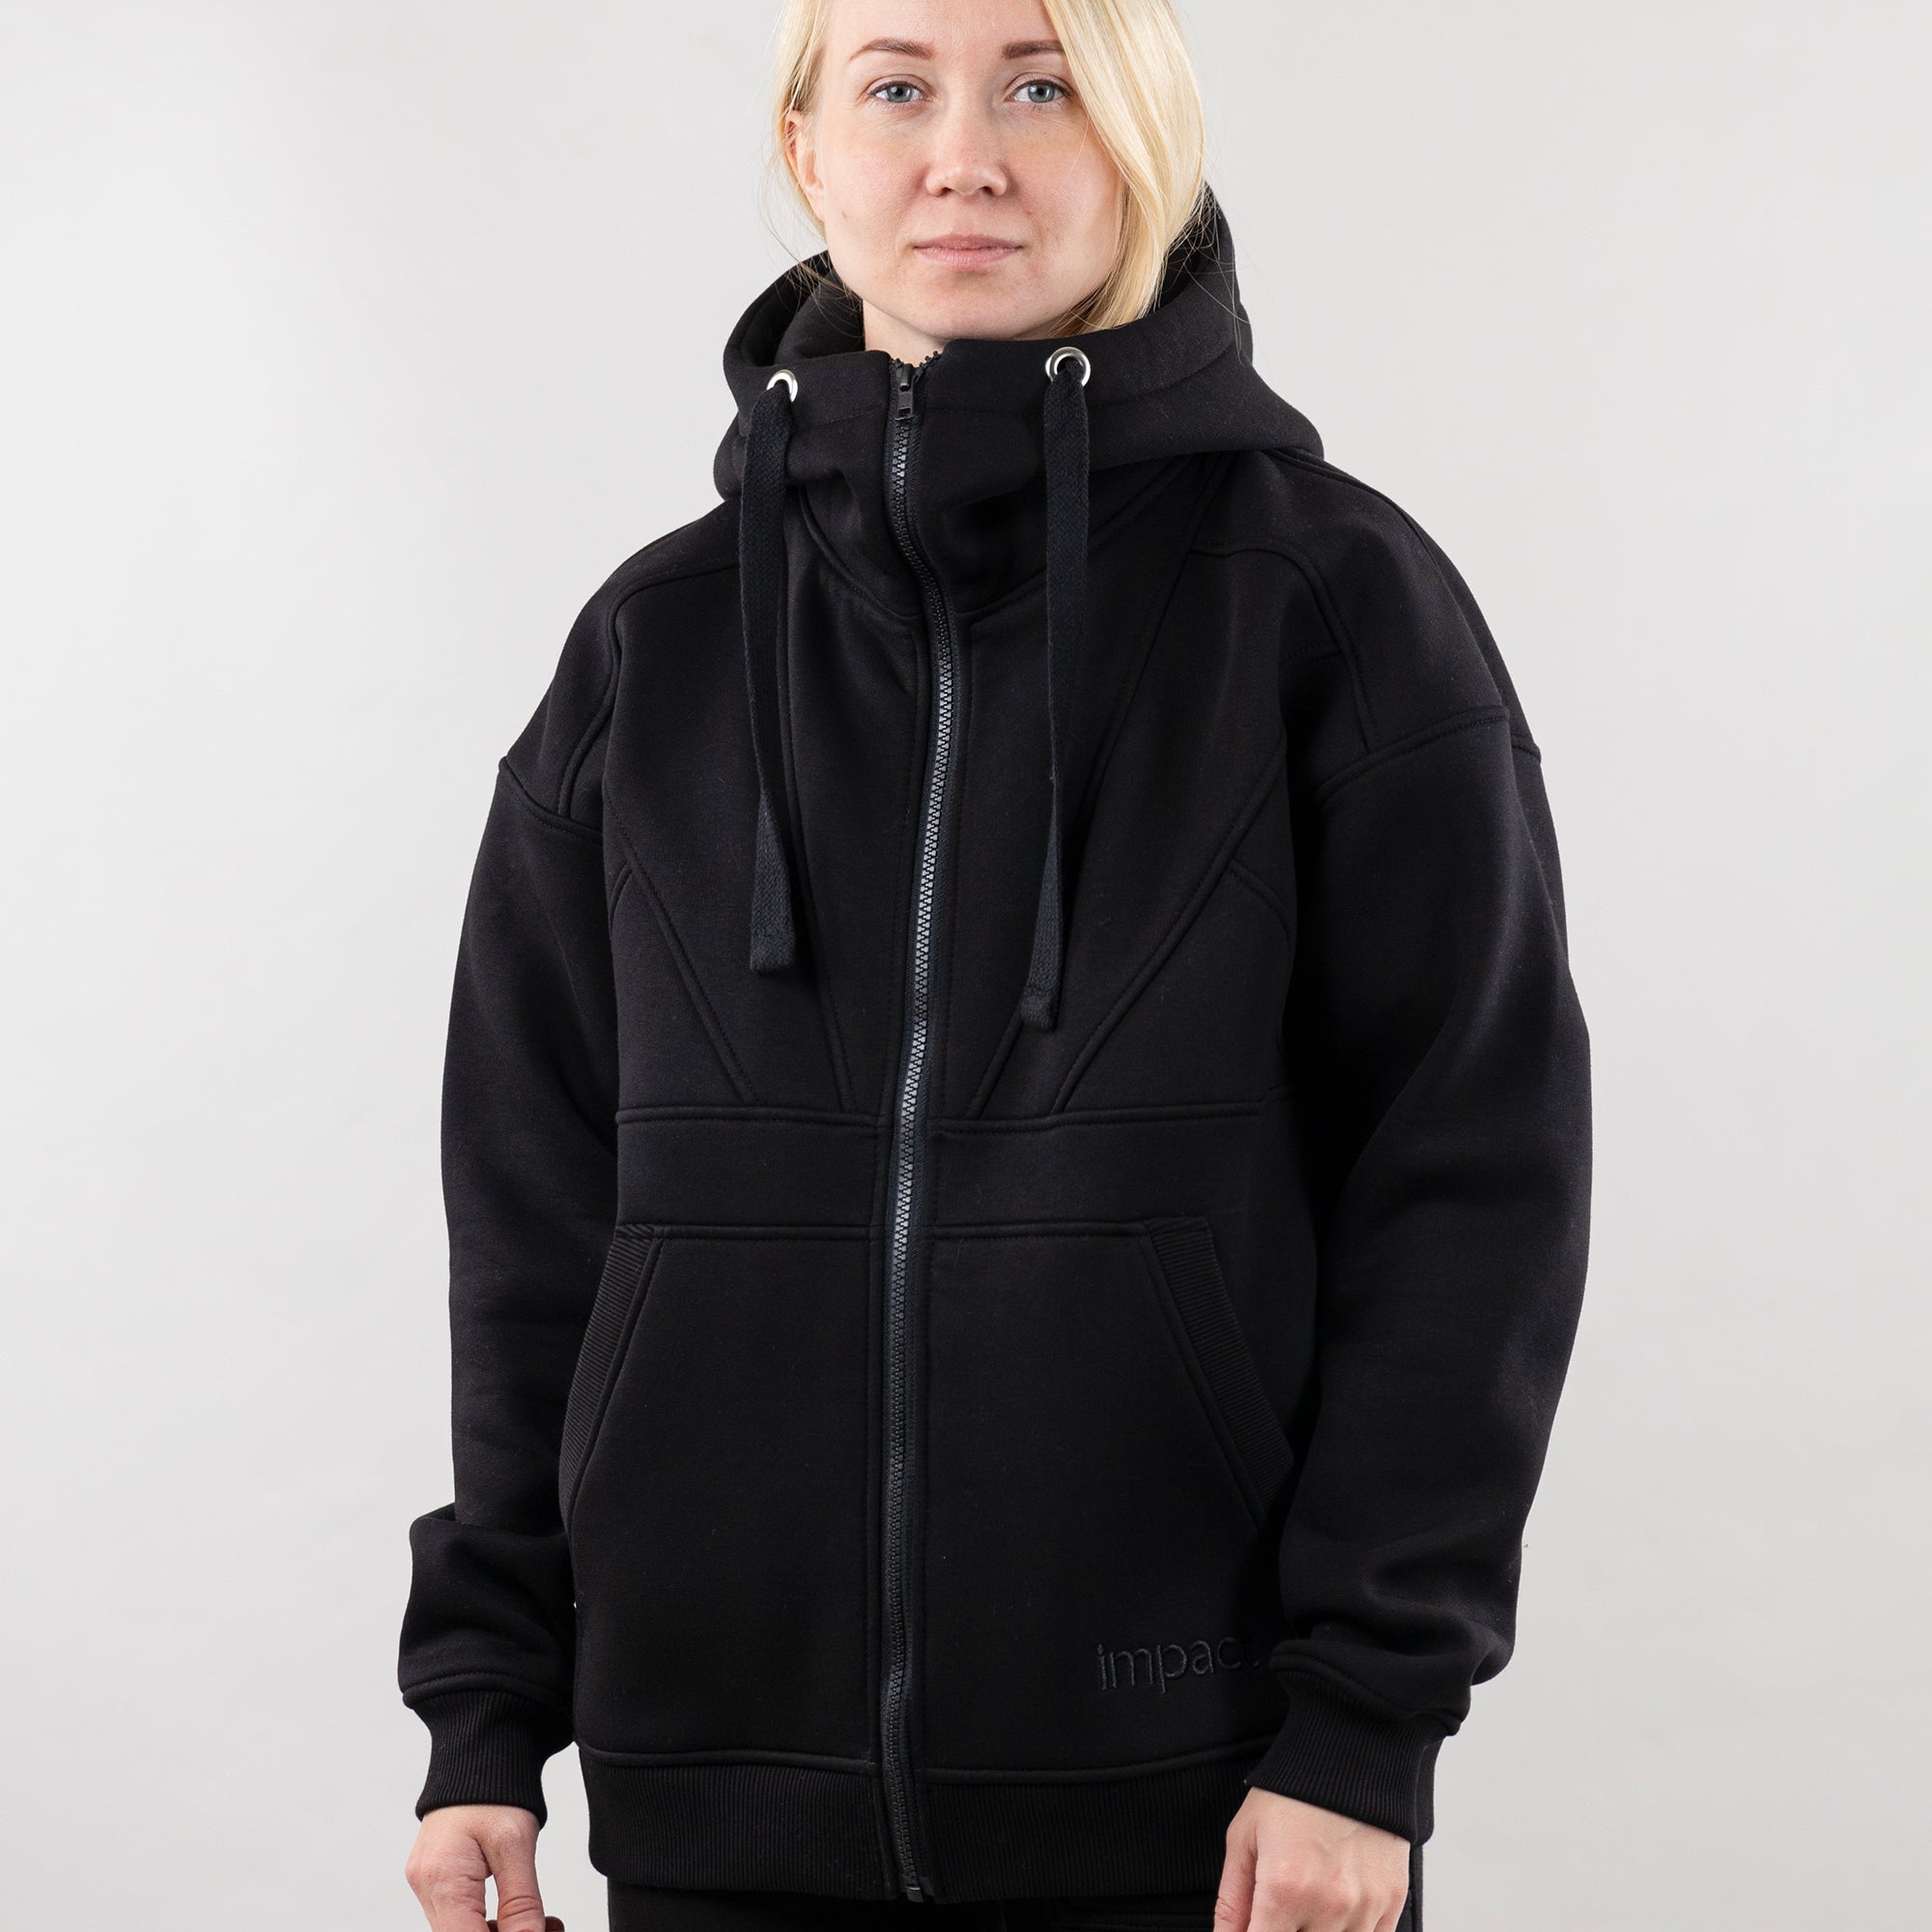 Hoodie "Introvert", warm casual zip-up hoodie for women